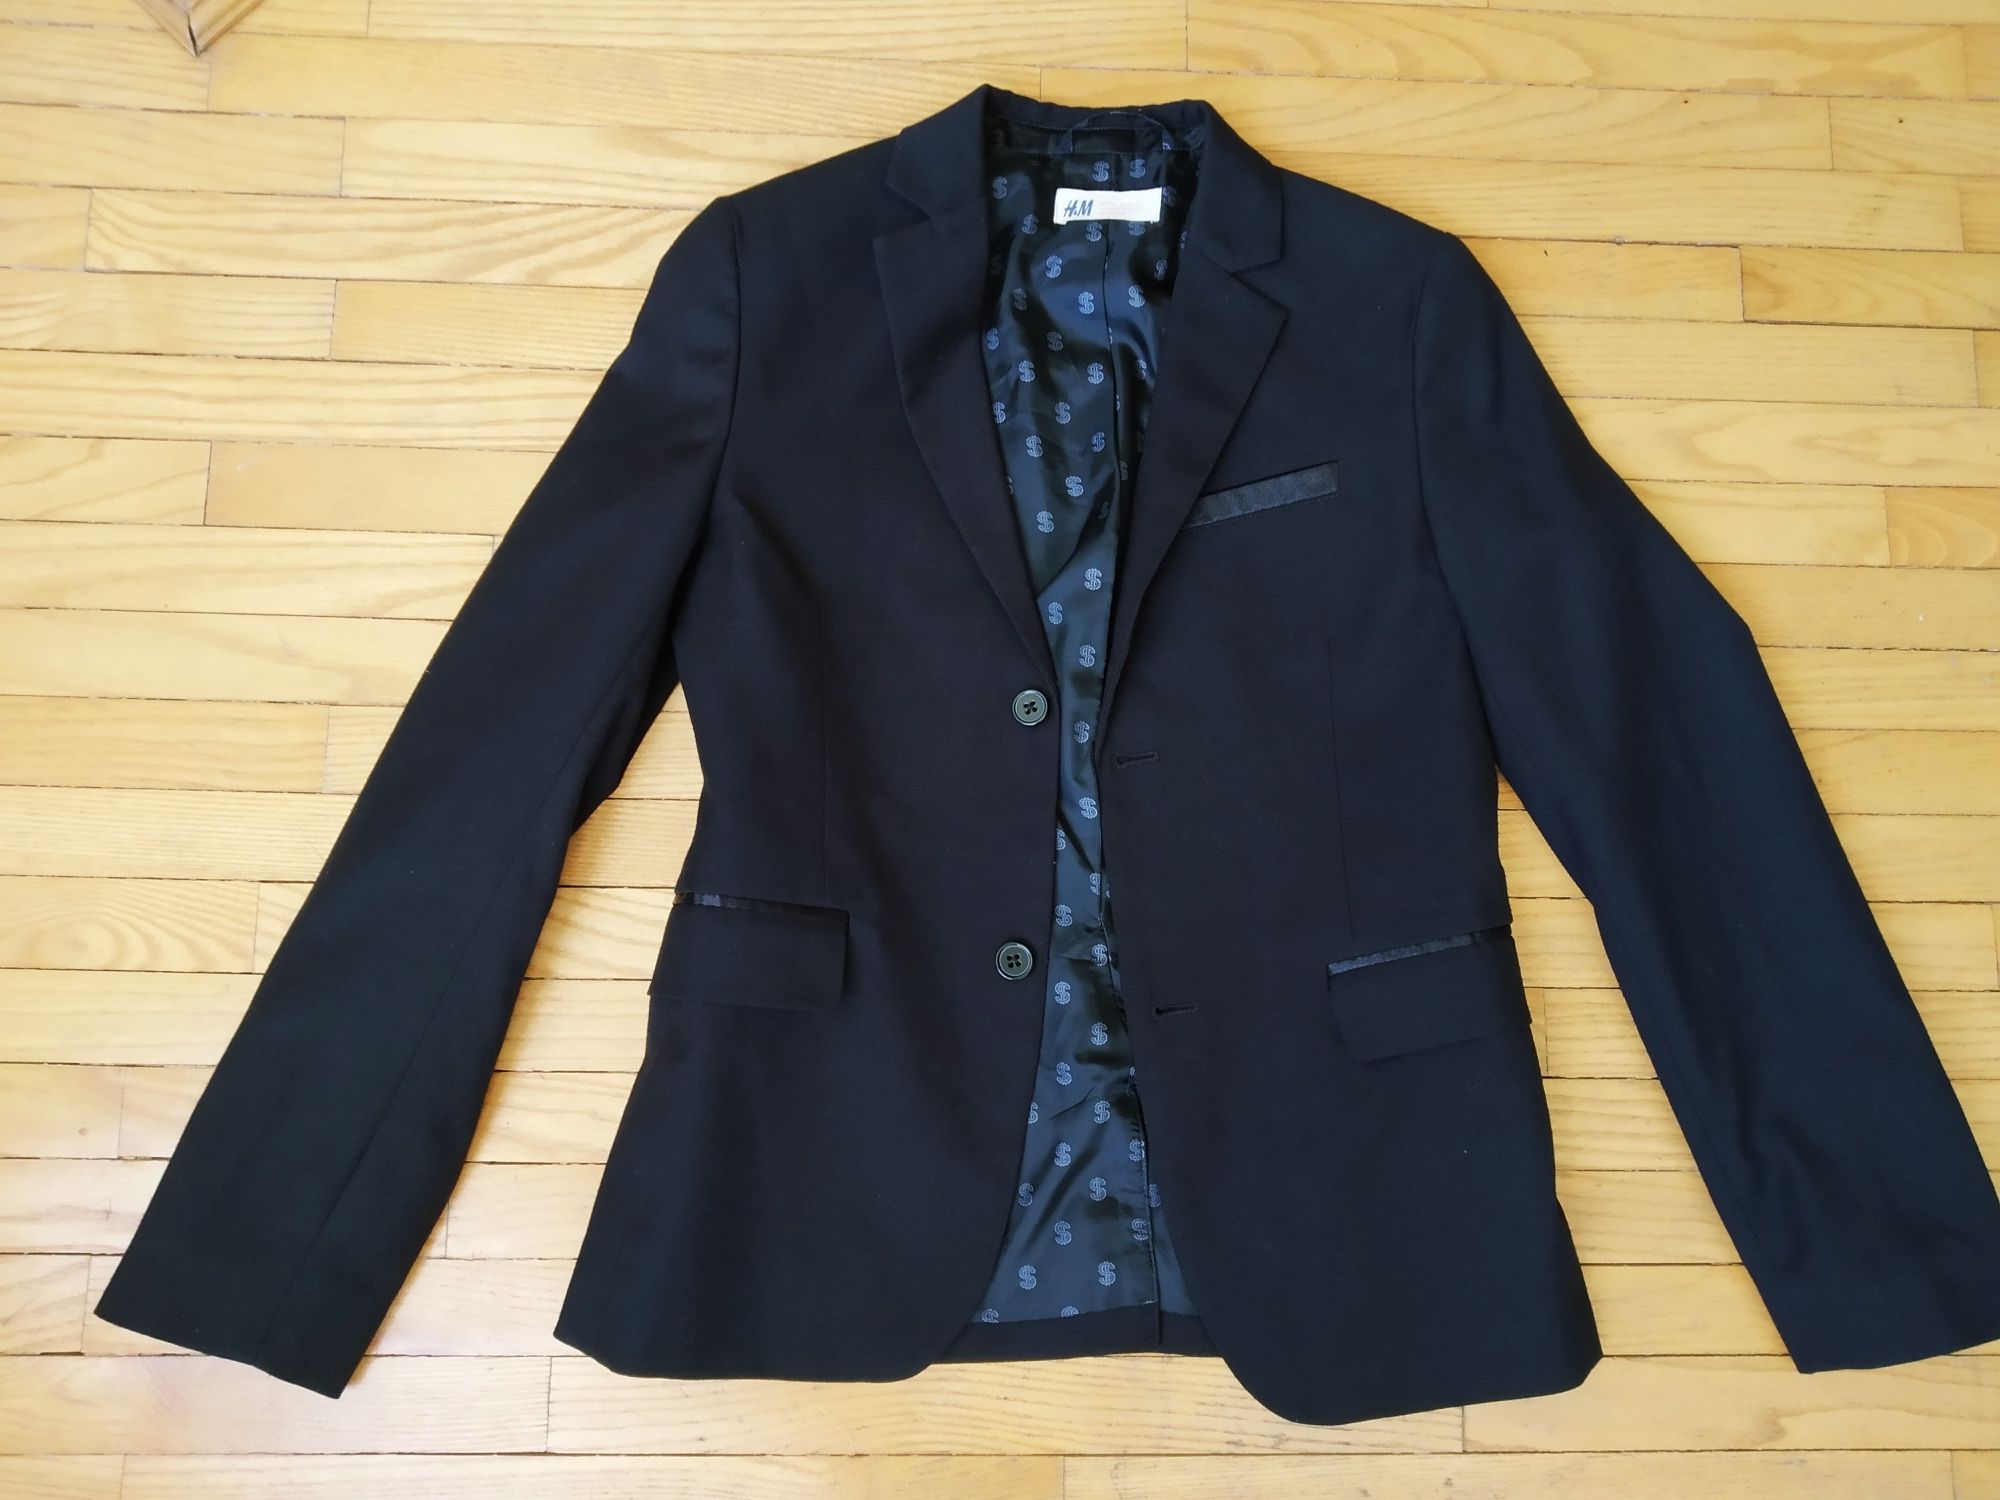 Піджак, жакет чорний H&M 140-146p. сорочка Next в подарунок.